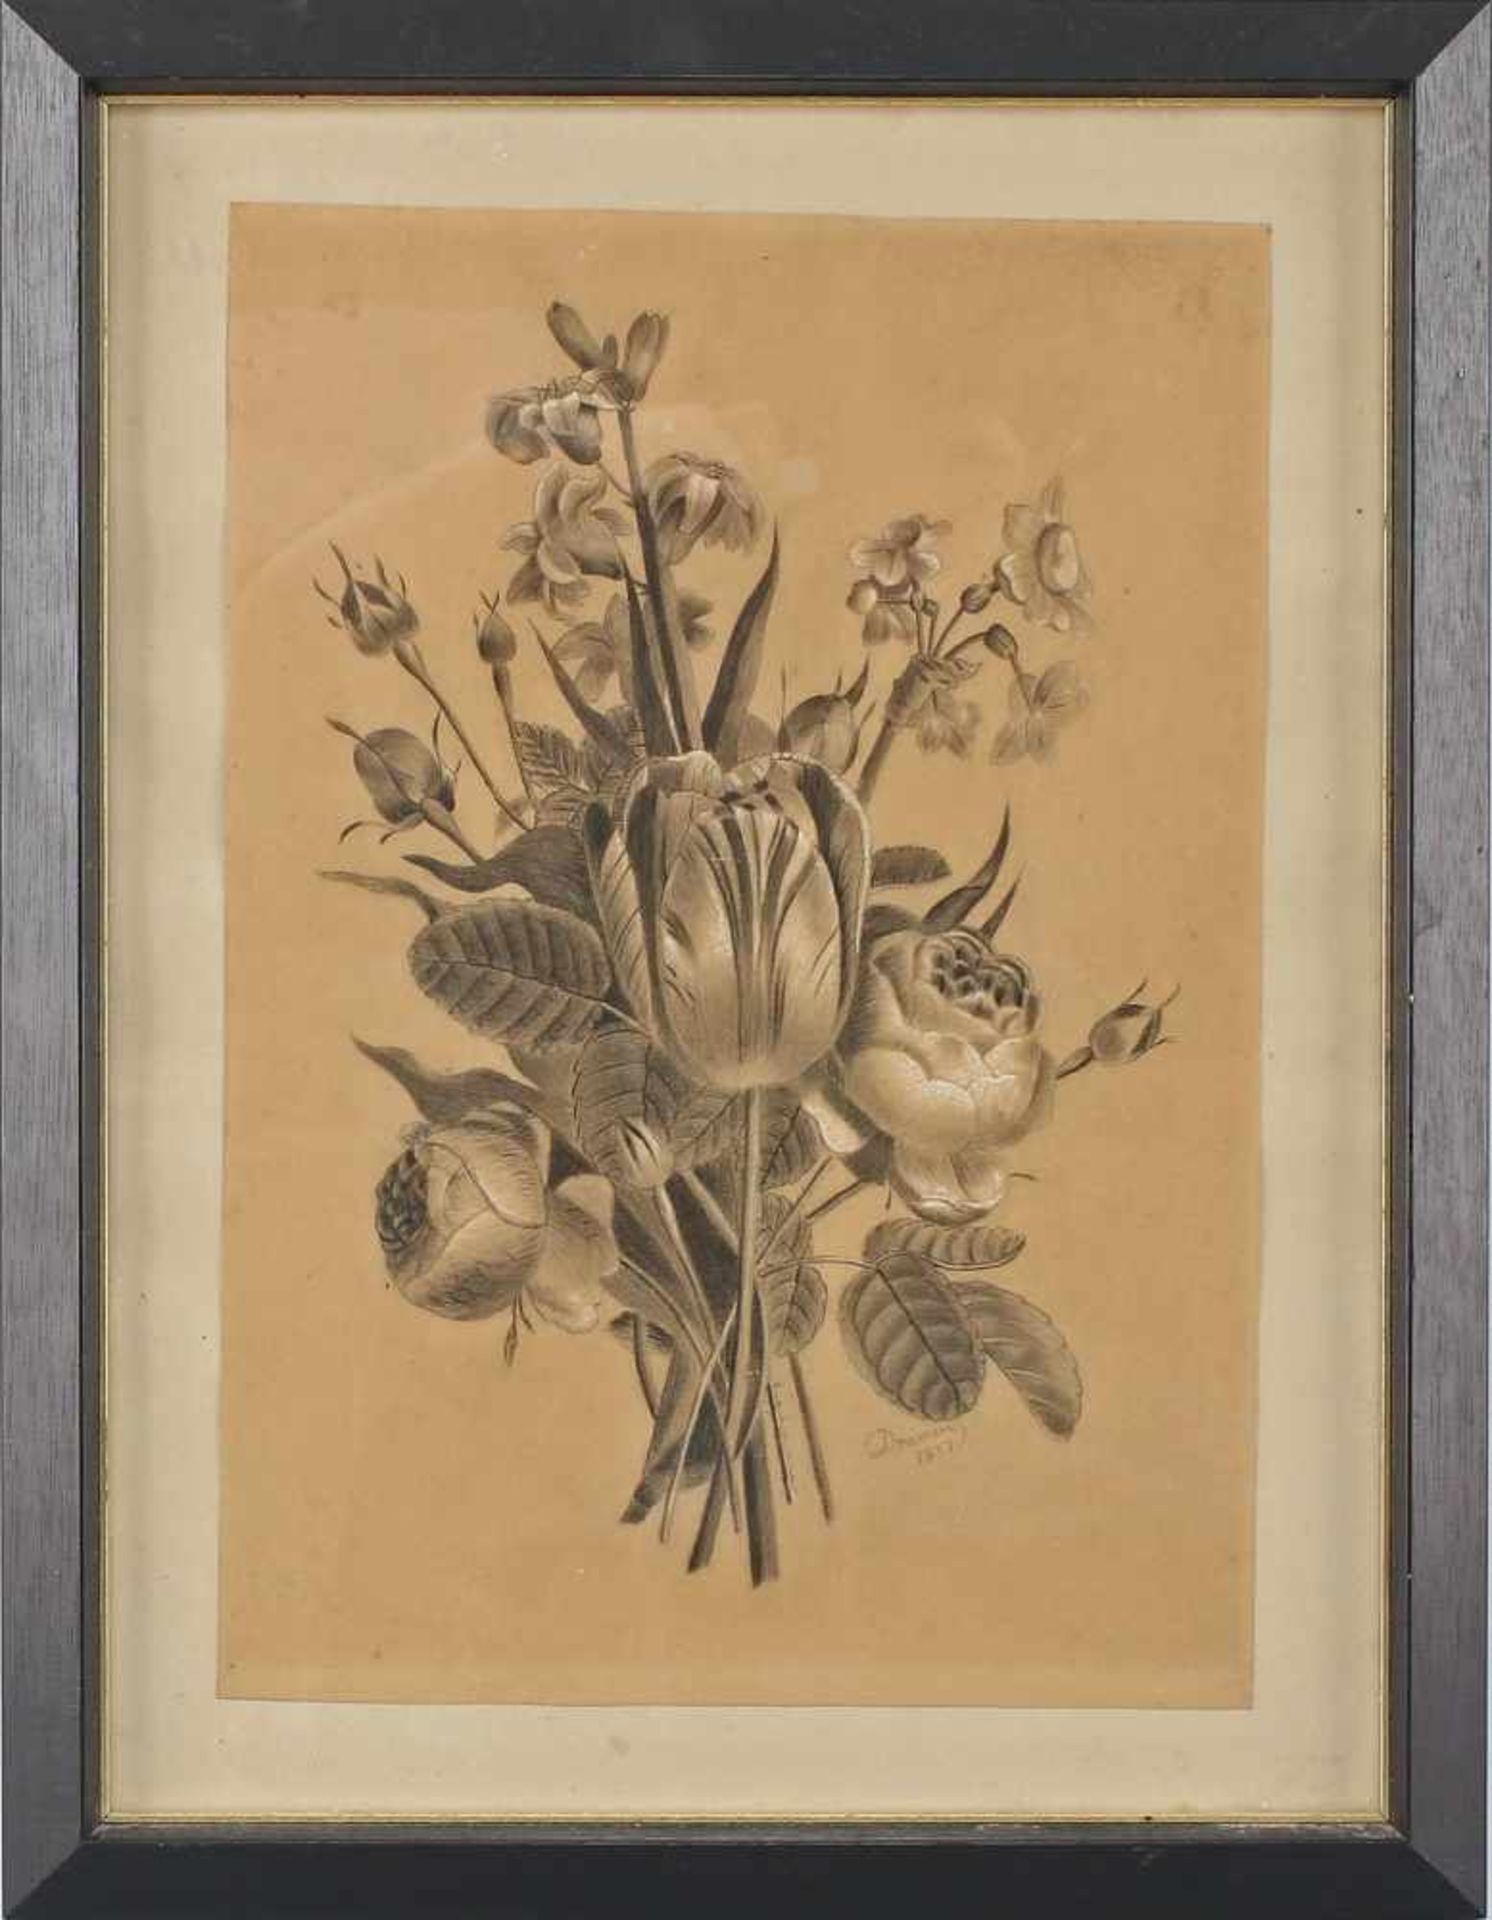 Doumere, Botanisches BlattBleistift- und Pastellkreidezeichnung auf Papier, re. u. sign. "Doumere"